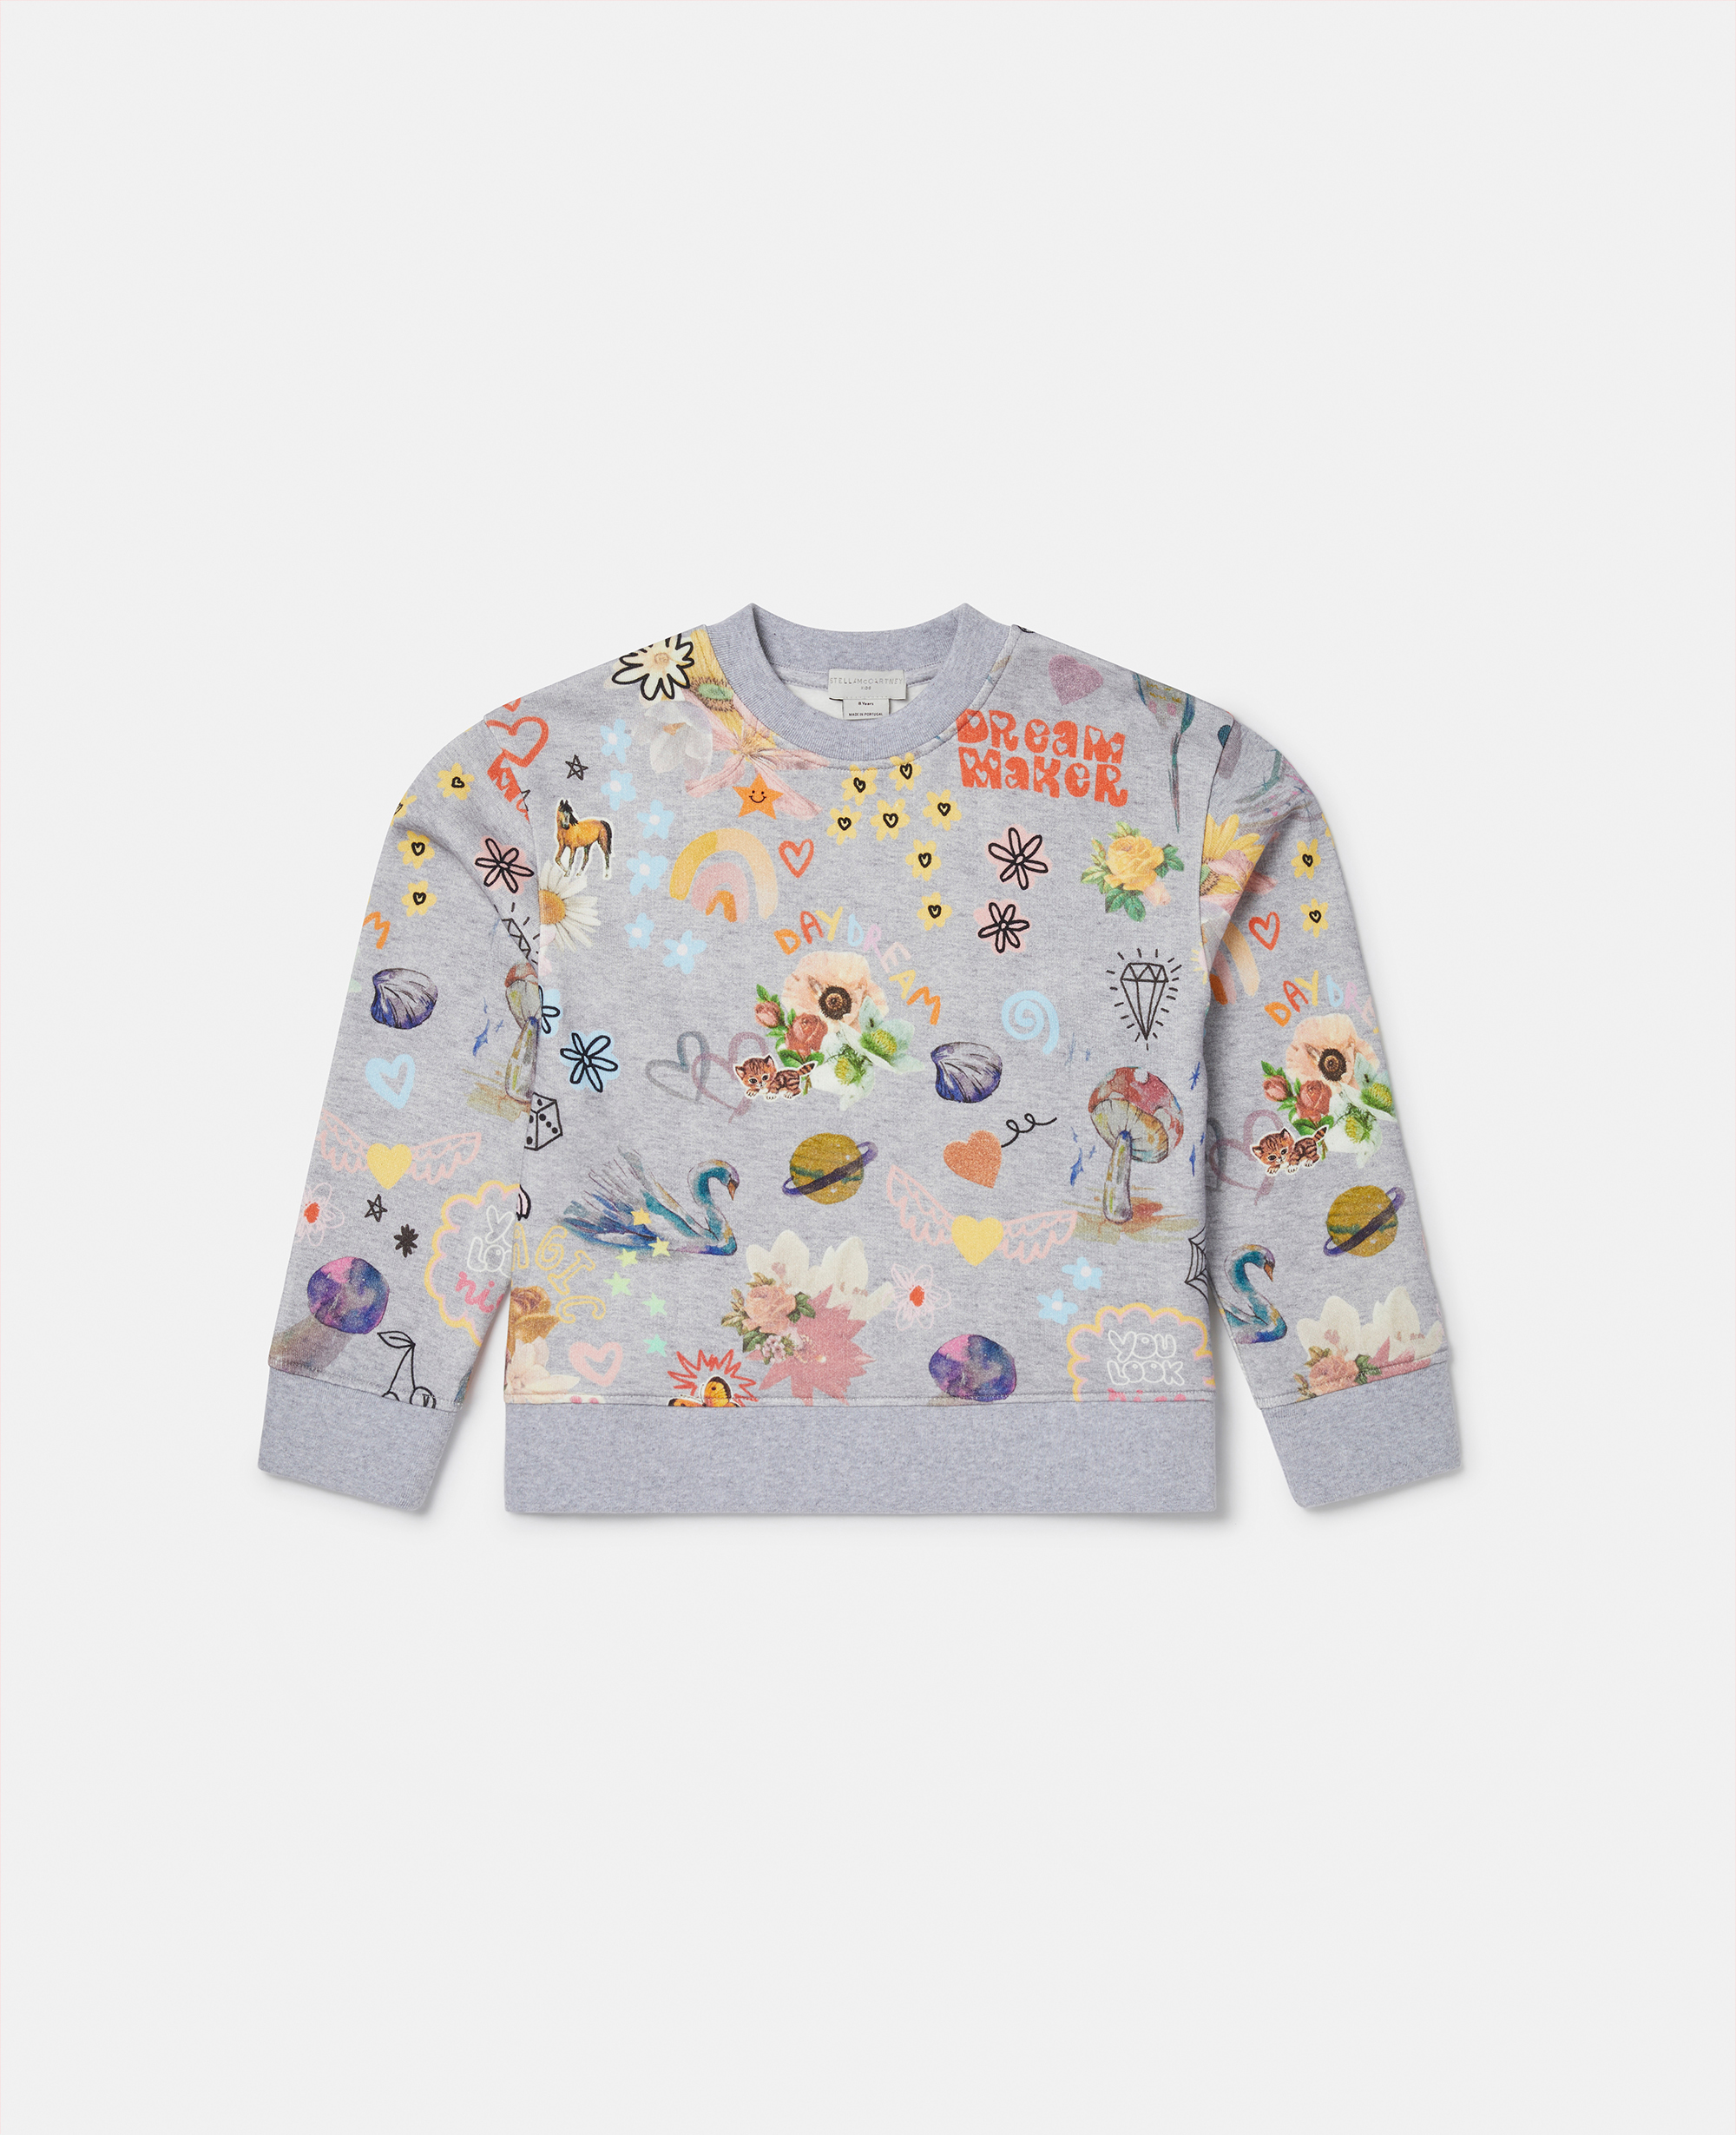 Stella Mccartney Babies' Dreammaker Doodle Sweatshirt In Grey